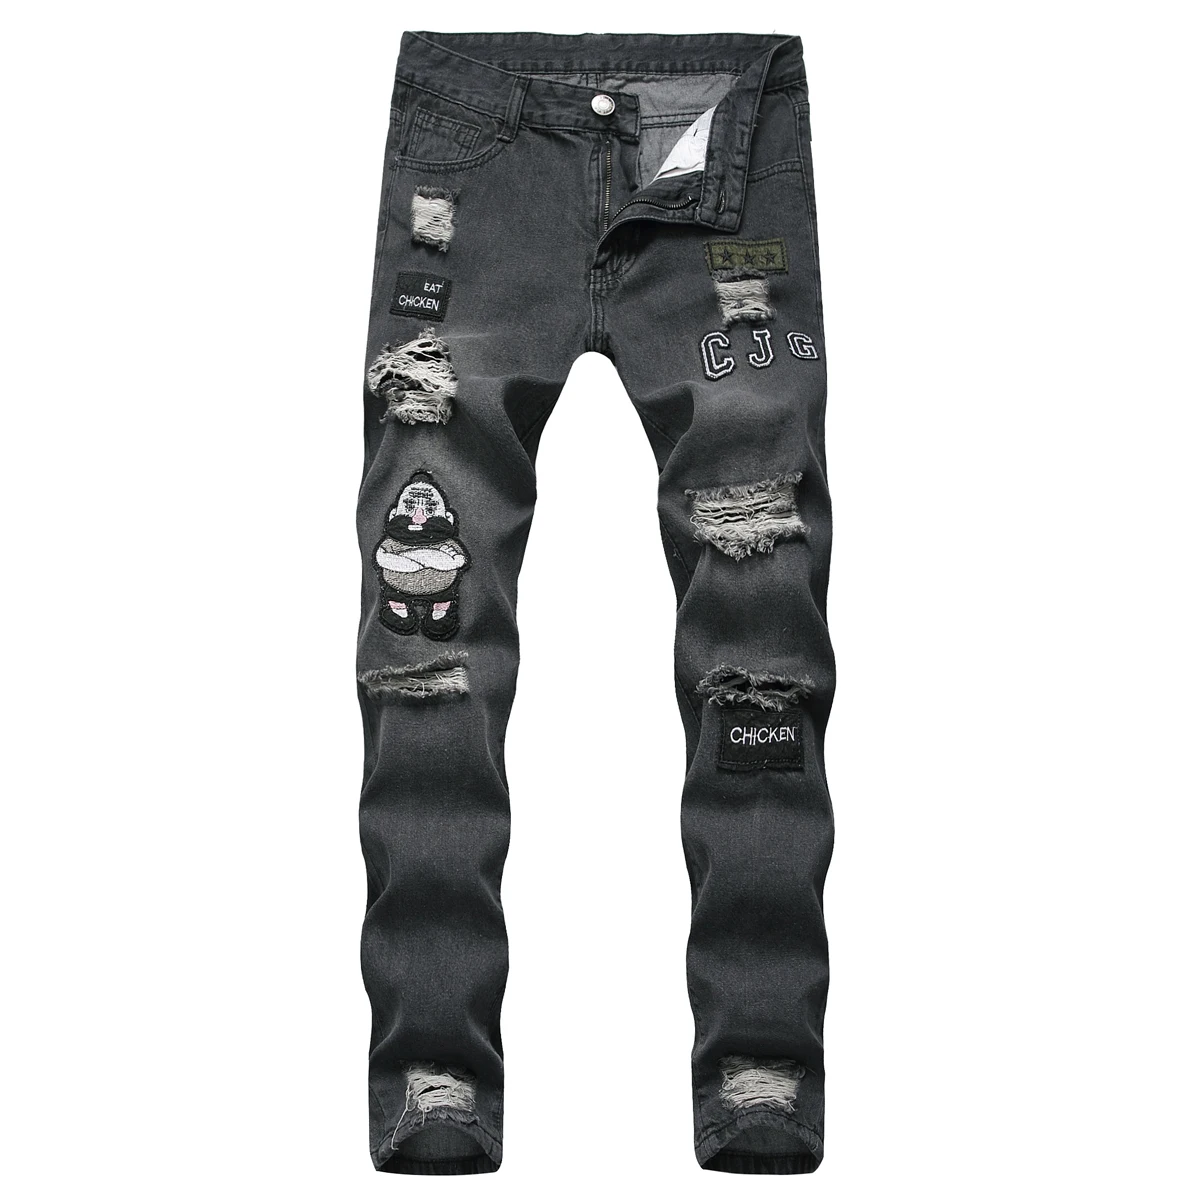 3 вида стилей, мужские эластичные рваные обтягивающие байкерские джинсы с вышивкой и принтом, джинсы с прорезями и прорезями, узкие джинсы, поцарапанные джинсы высокого качества - Цвет: Черный